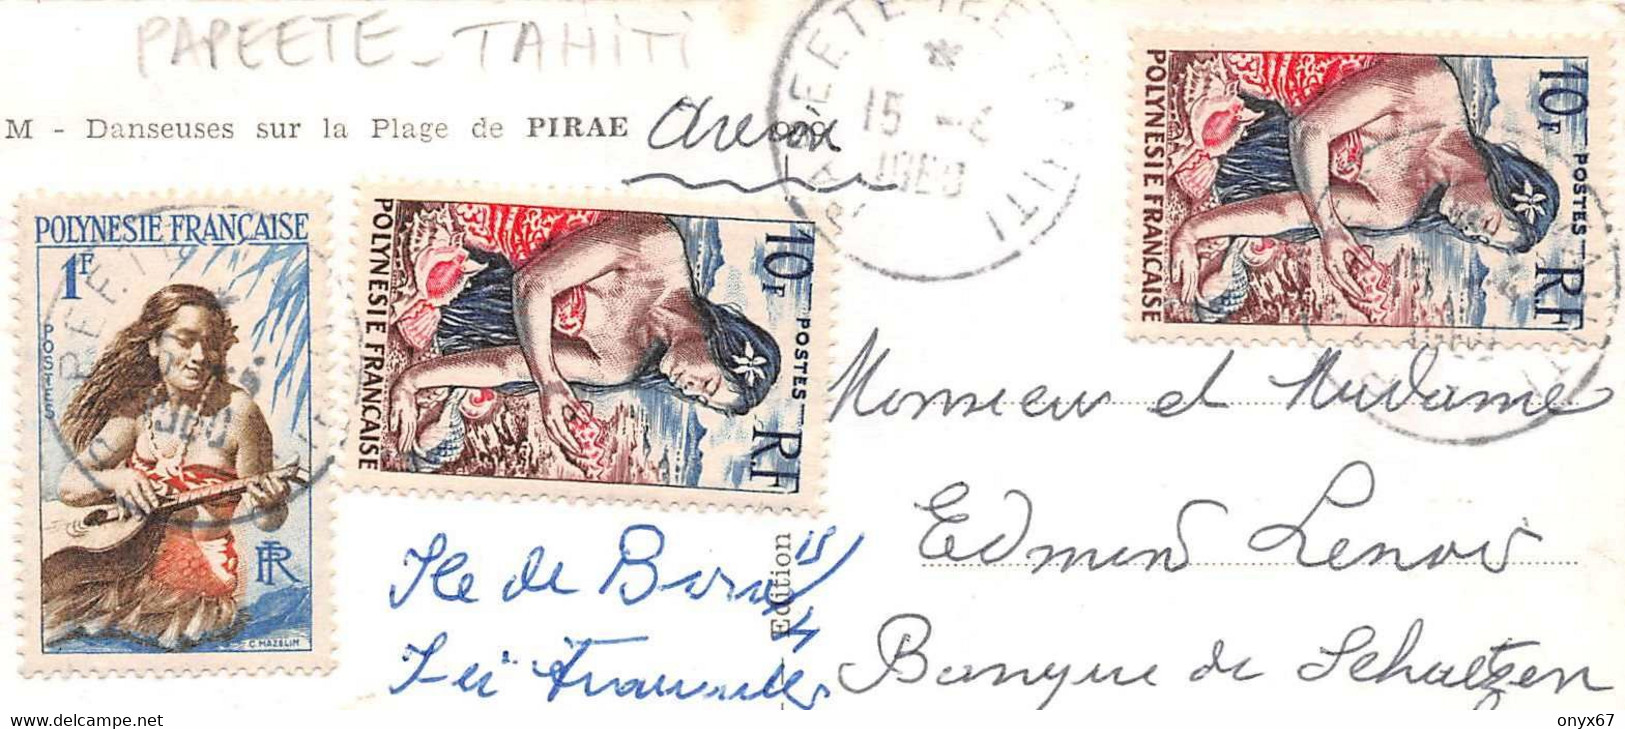 Danseuses Plage De PIRAE-Tahiti-Papeete-Polynésie Française-Timbre-Affranchissement-Cachet-Stamp-Briefmarken  3 SCANS - Polynésie Française